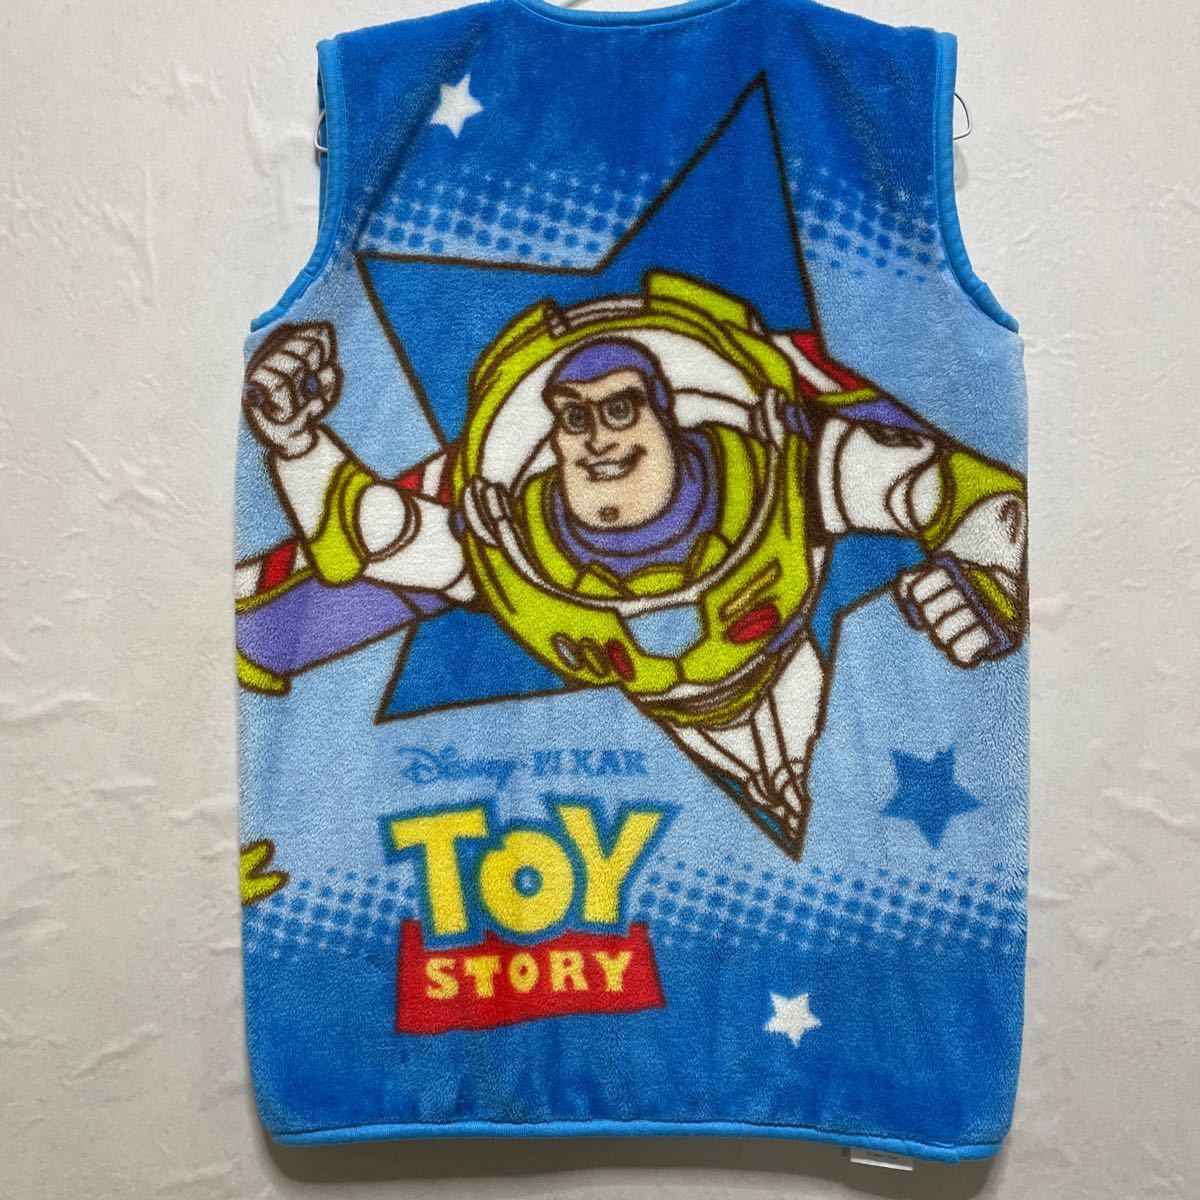 トイストーリー TOY STORY スリーパー 暖か ベスト かいまき 120 毛布 青 ブルー ディズニー Disney キッズ 子供服 防寒_画像2